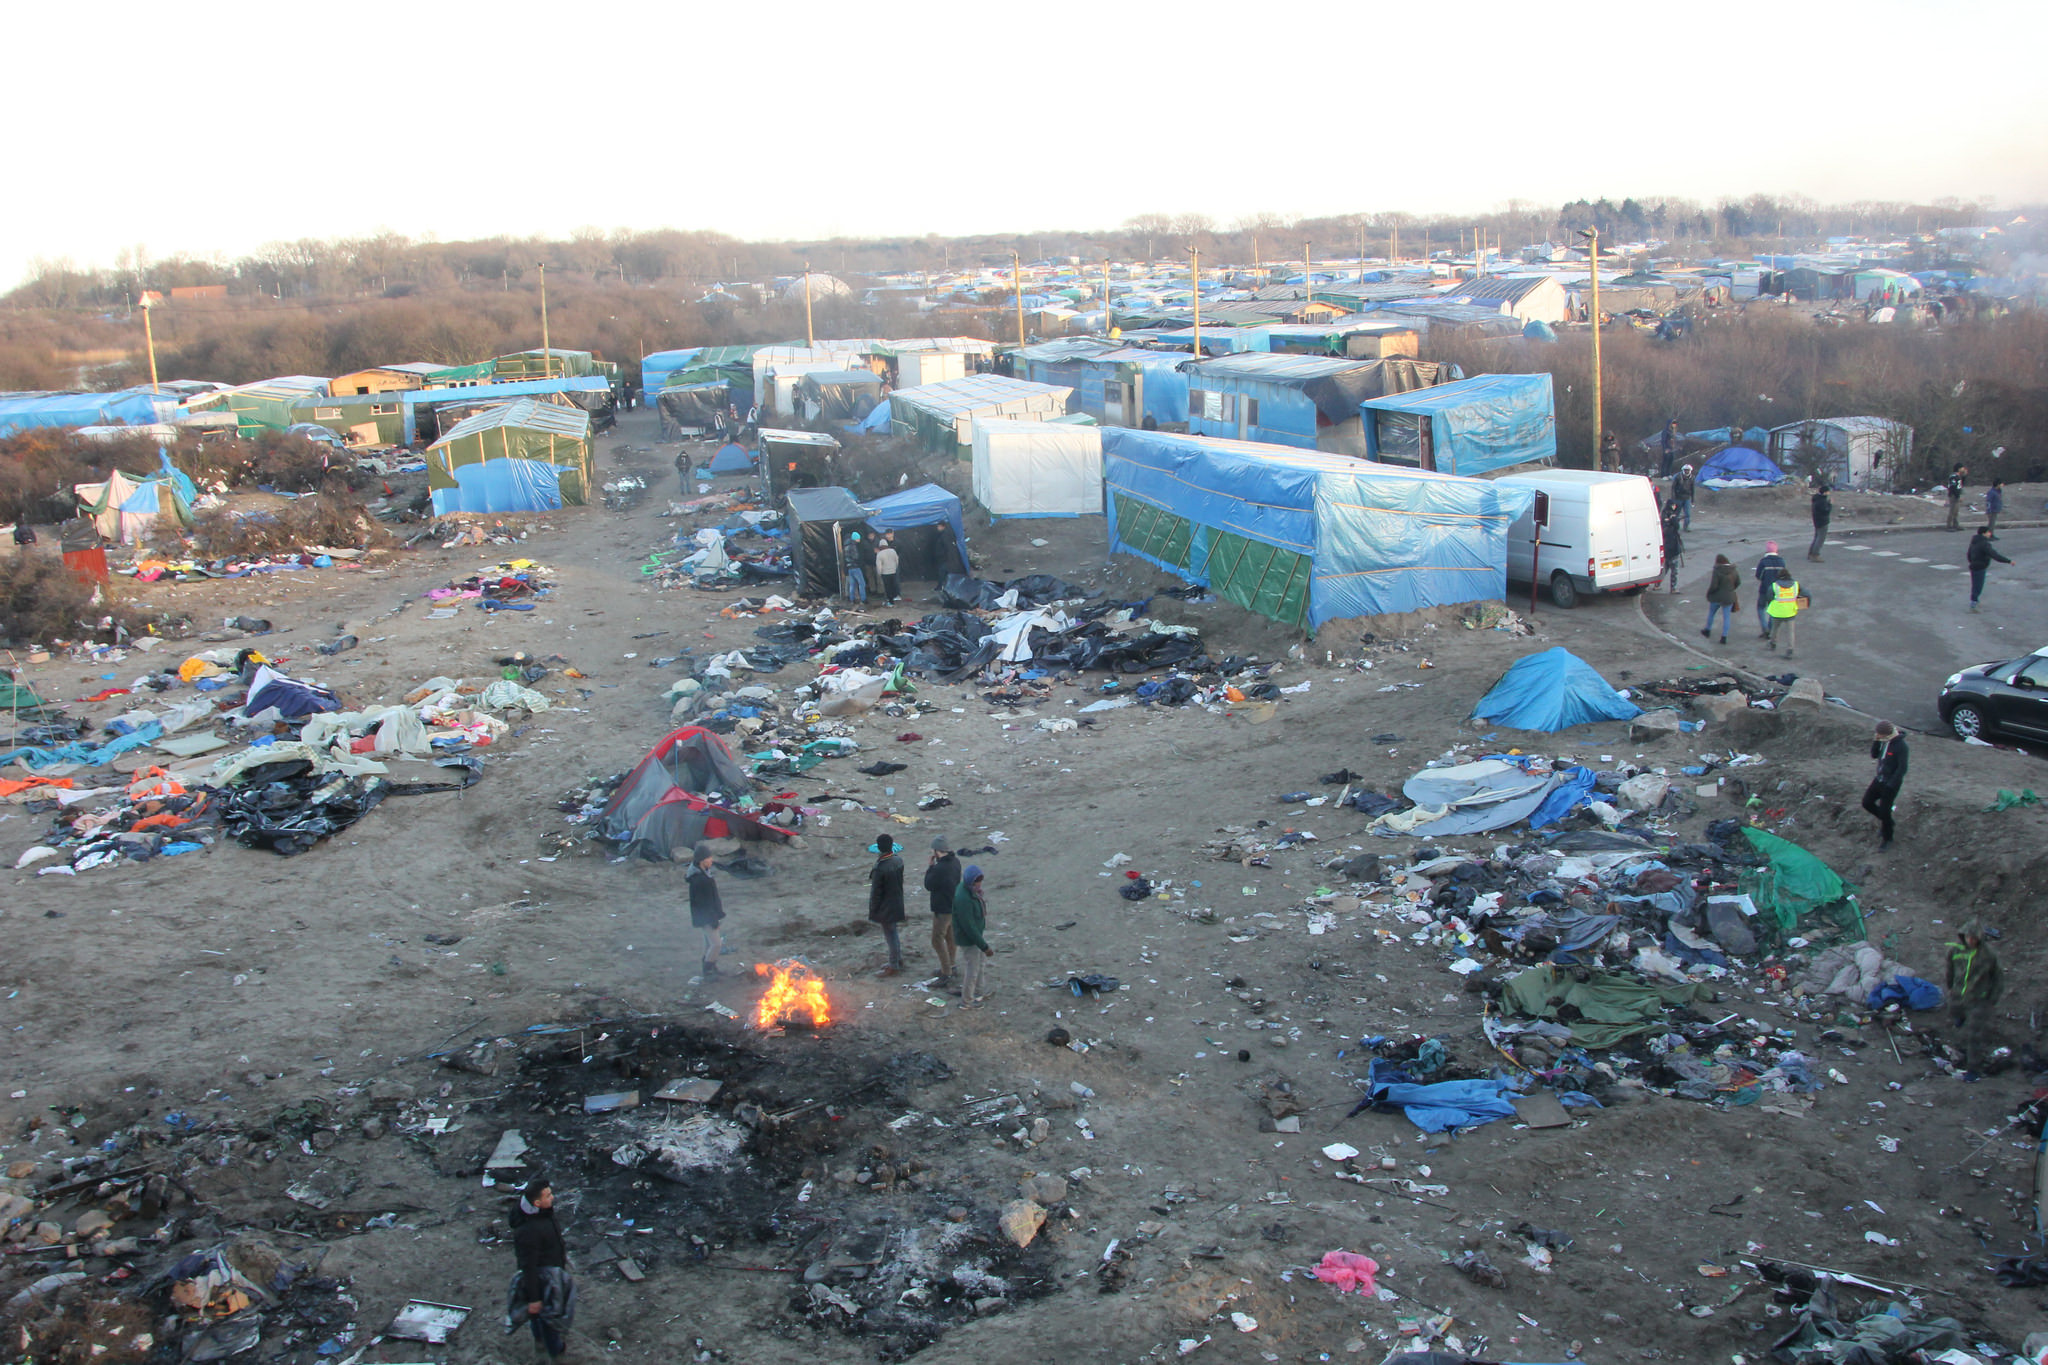 Calais, è iniziato lo smantellamento. I dati e i fatti